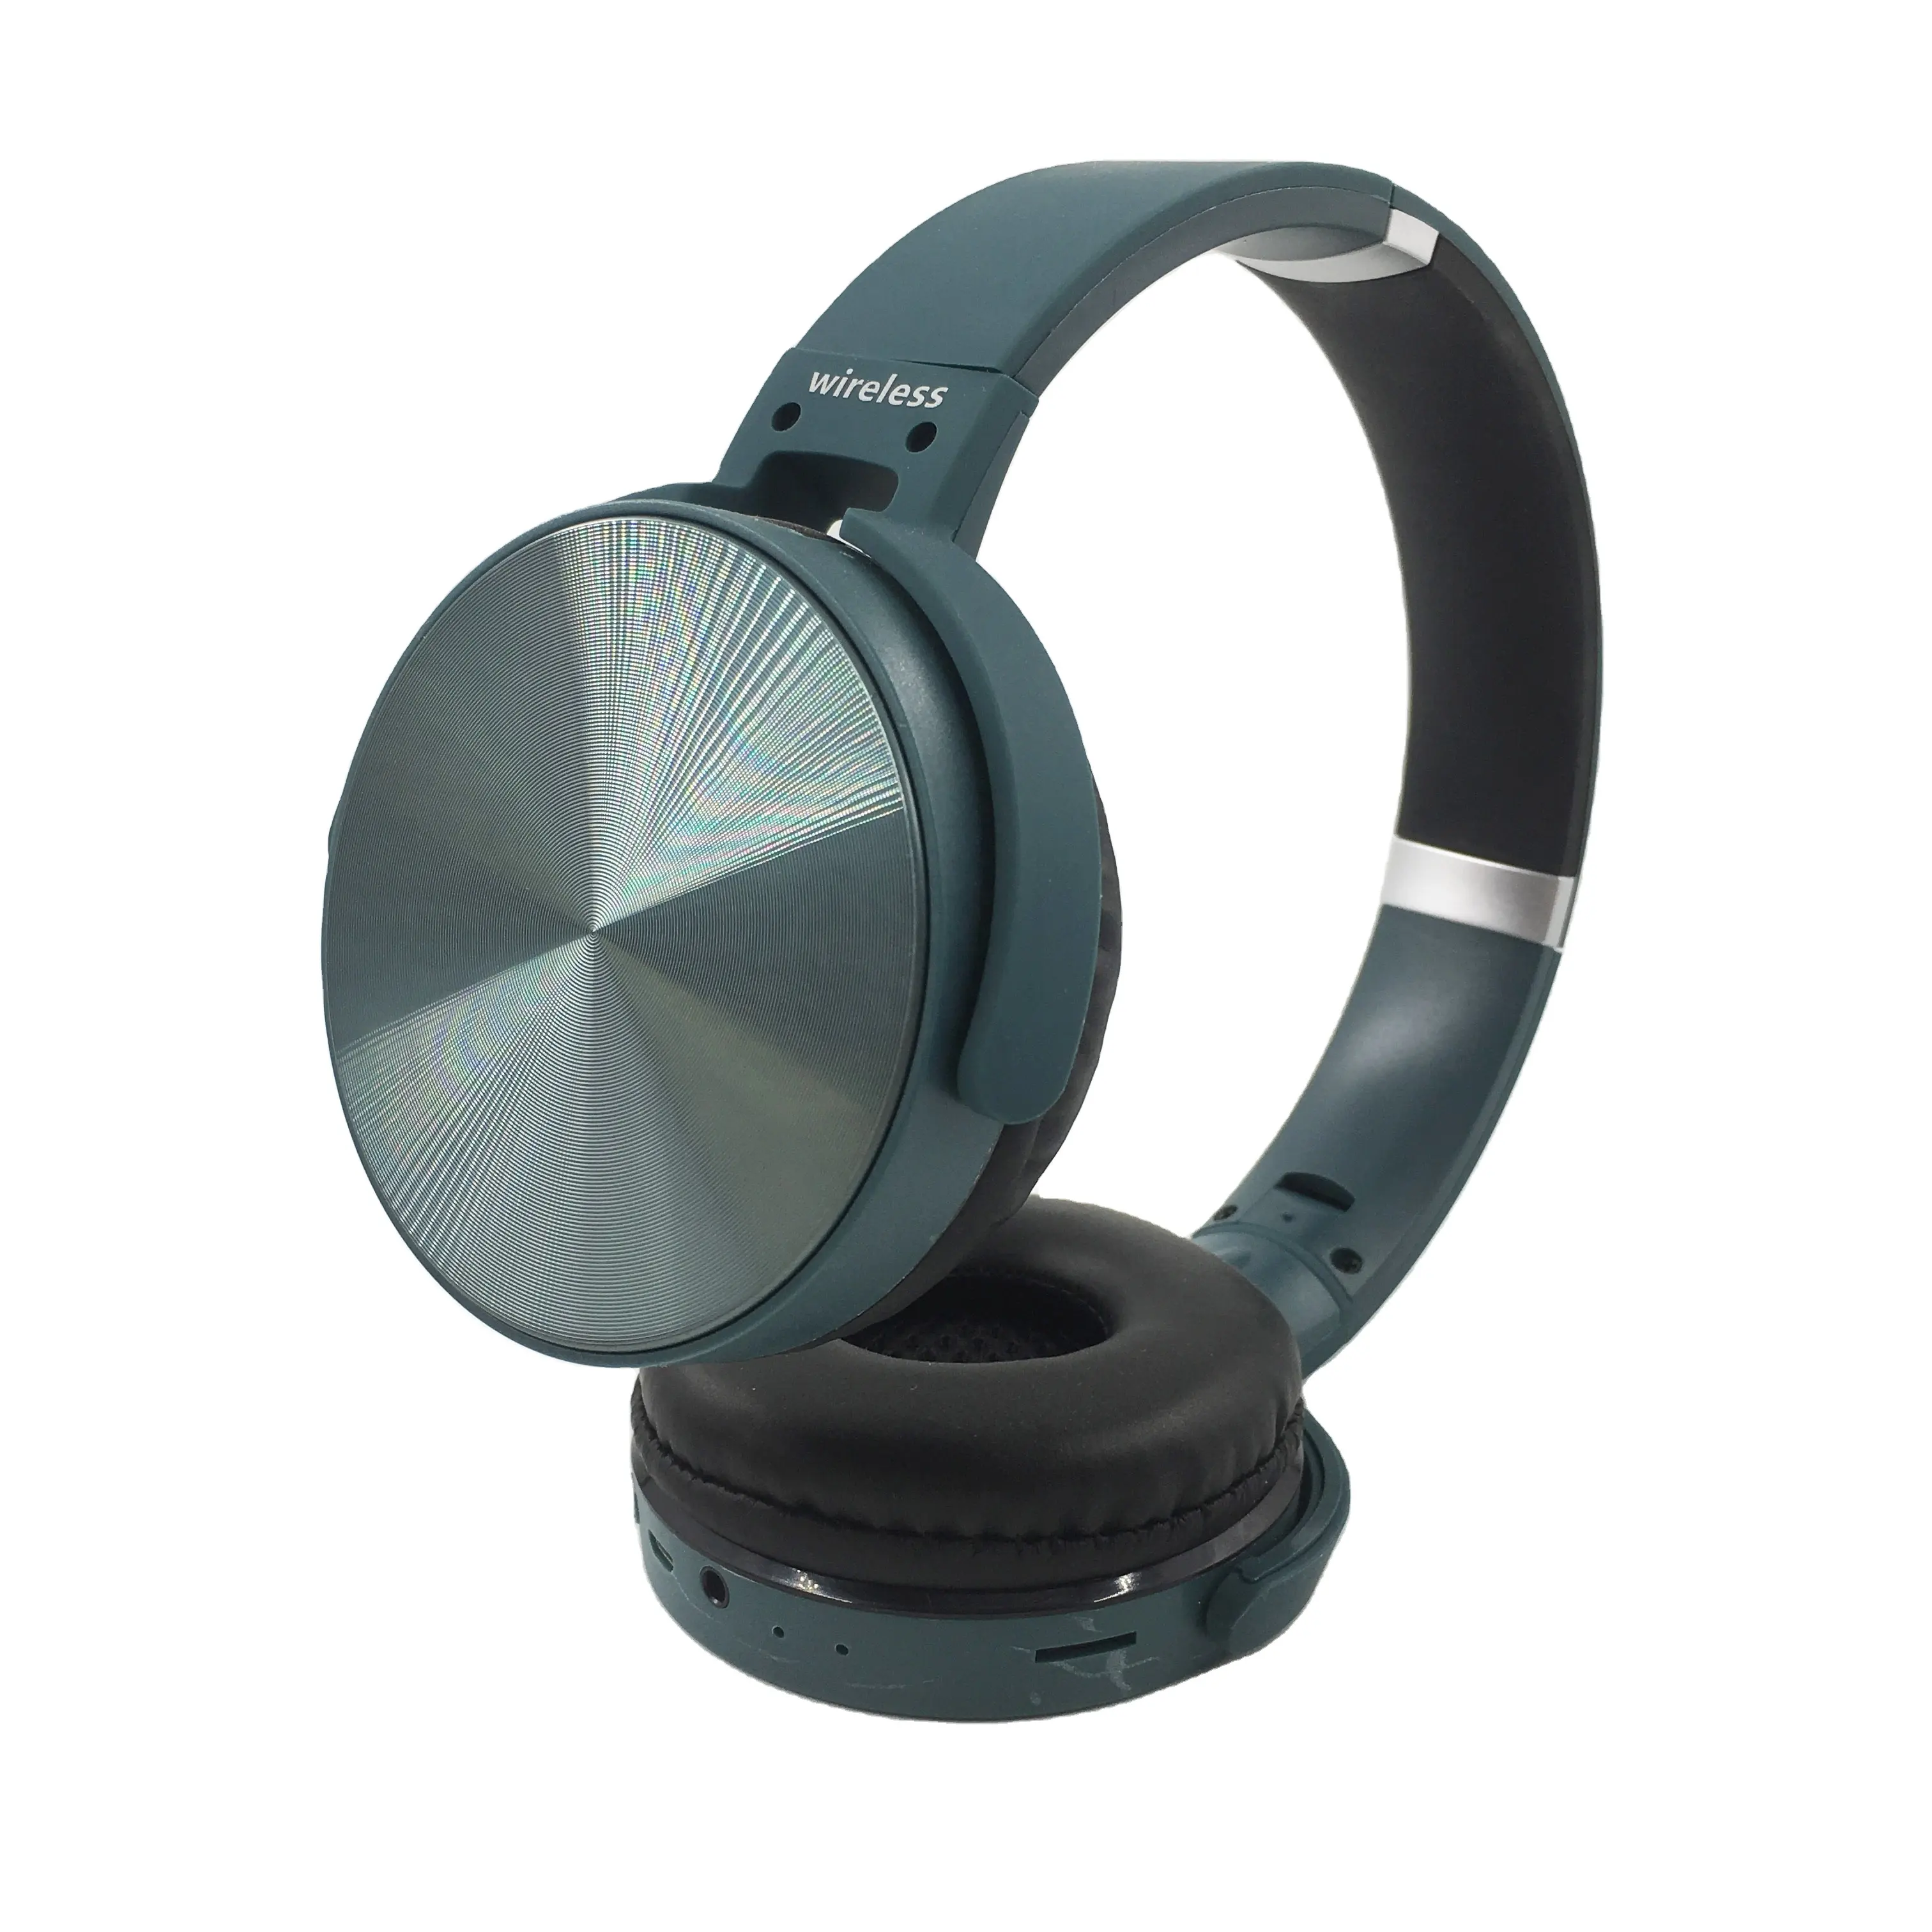 ST950 OEM HI-FI Stereo Handsfree FM radyo kablosuz bluetooth üzerinde kulaklıklar kulaklık ücretsiz örnek katlanır kulaklık